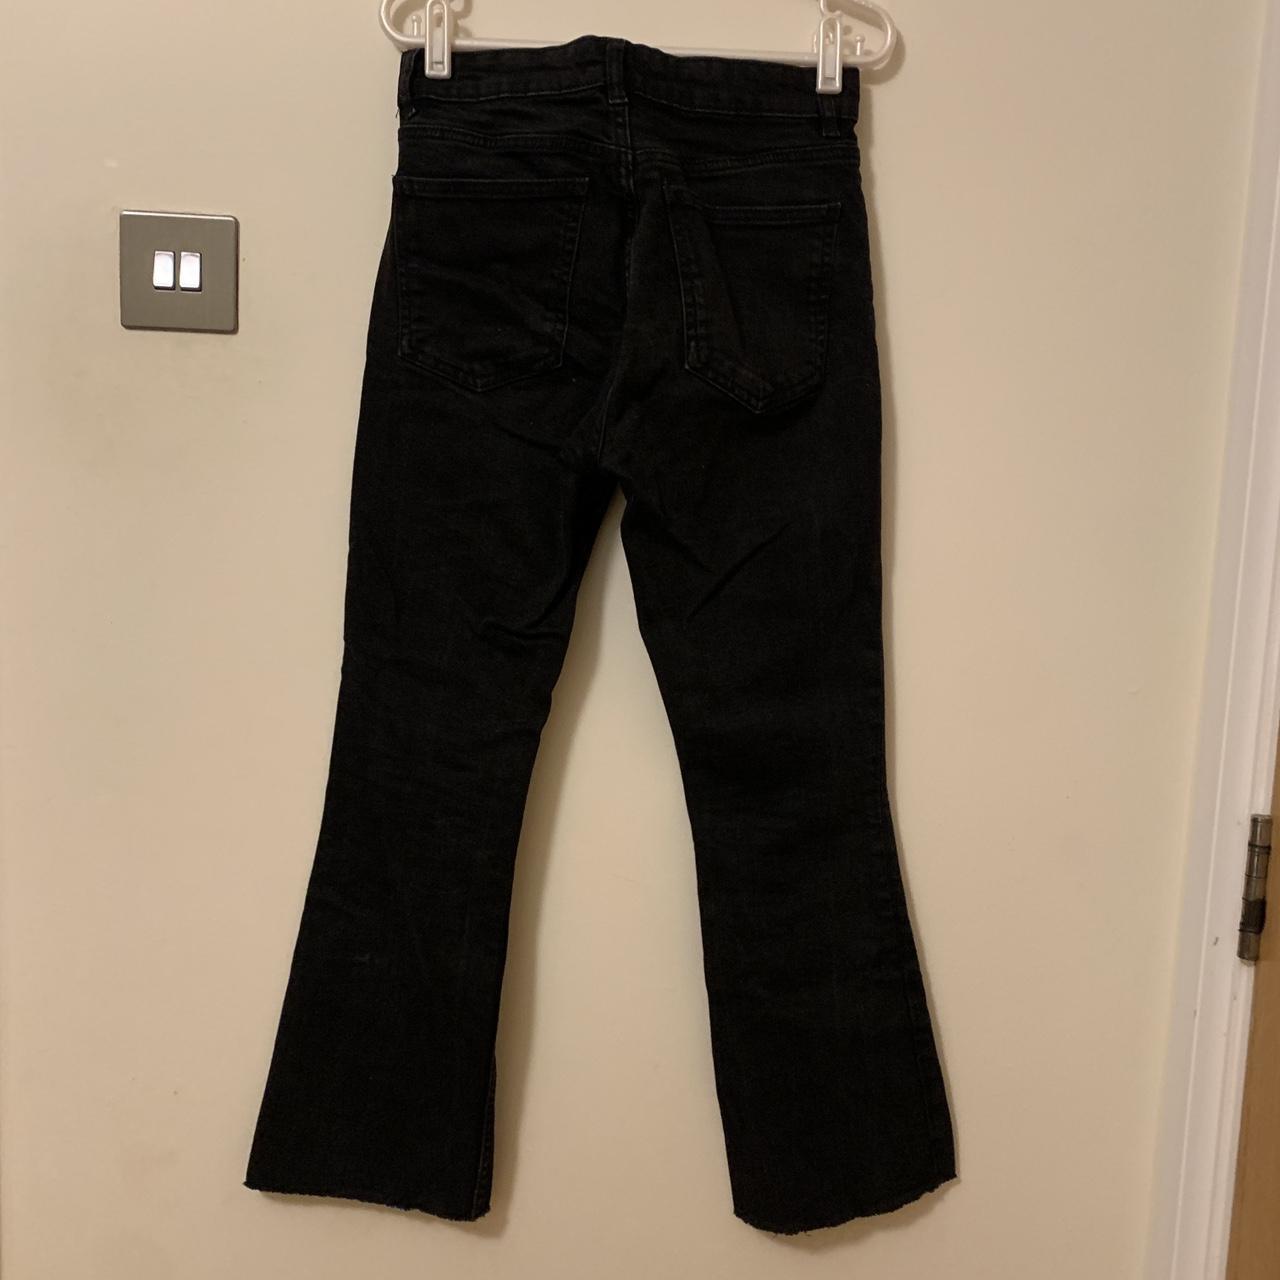 Black Zara Flared Jeans - 6/8 Dark black jeans from... - Depop